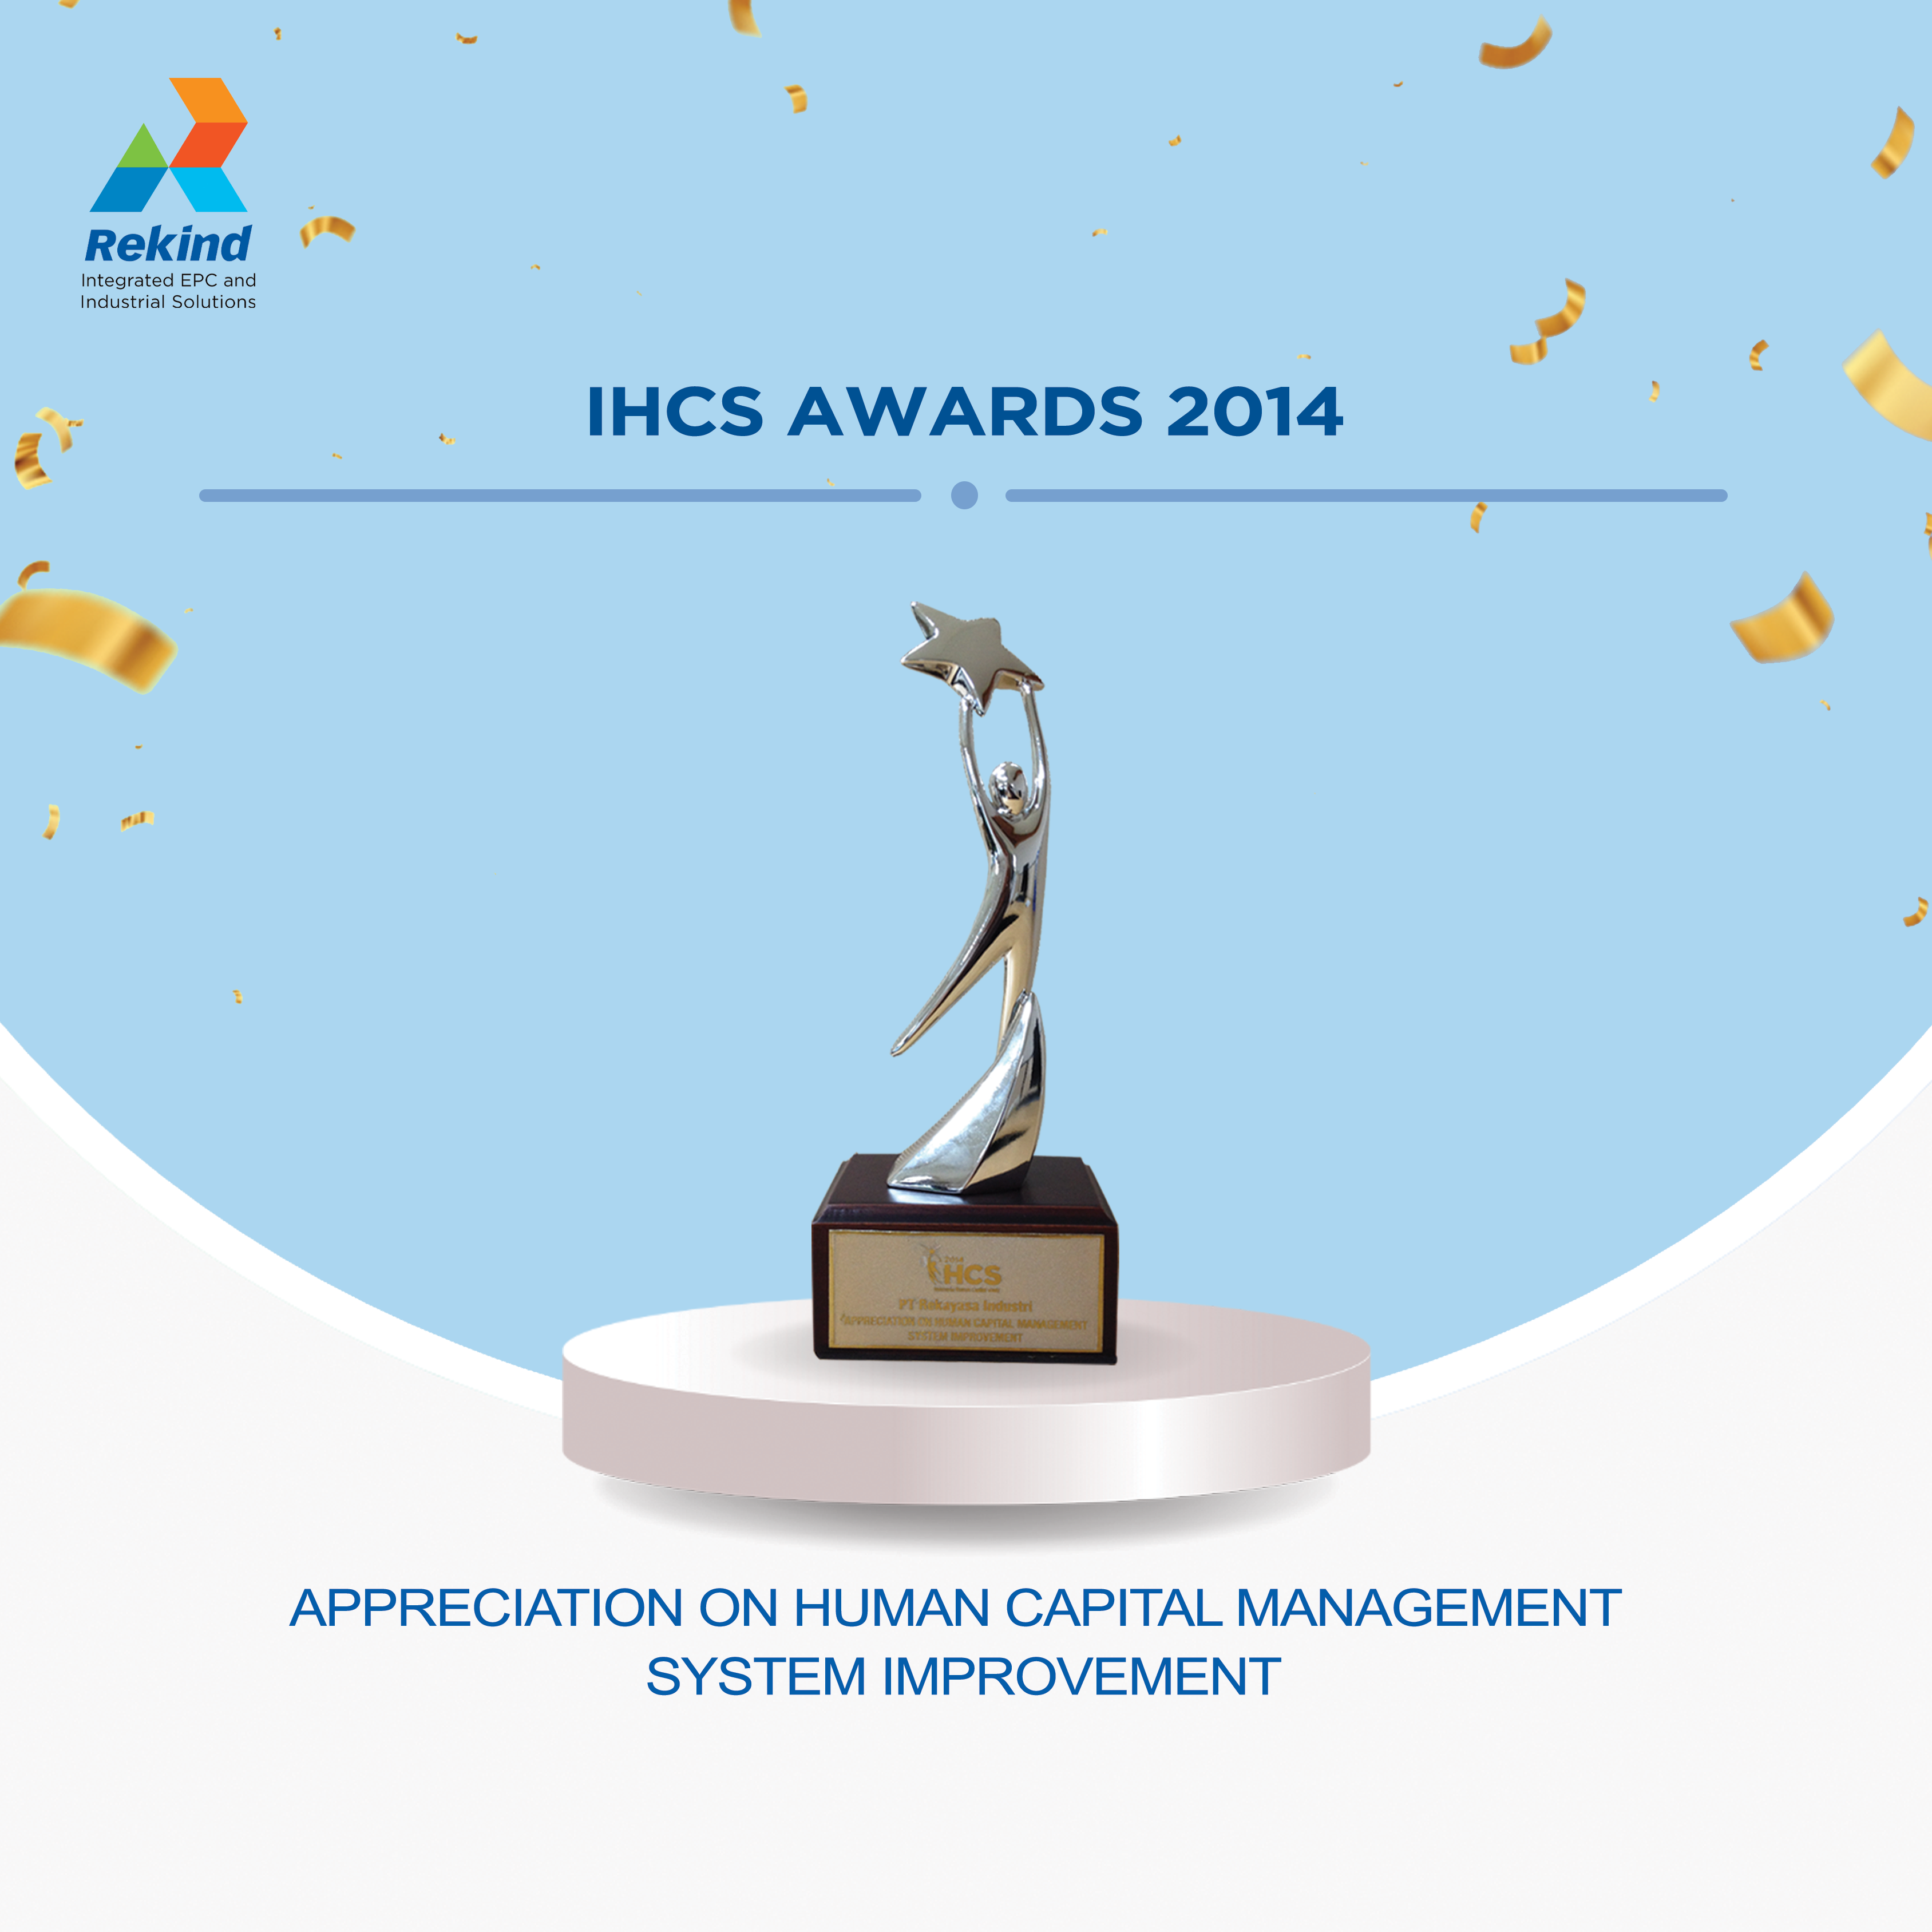 IHCS AWARD 2014